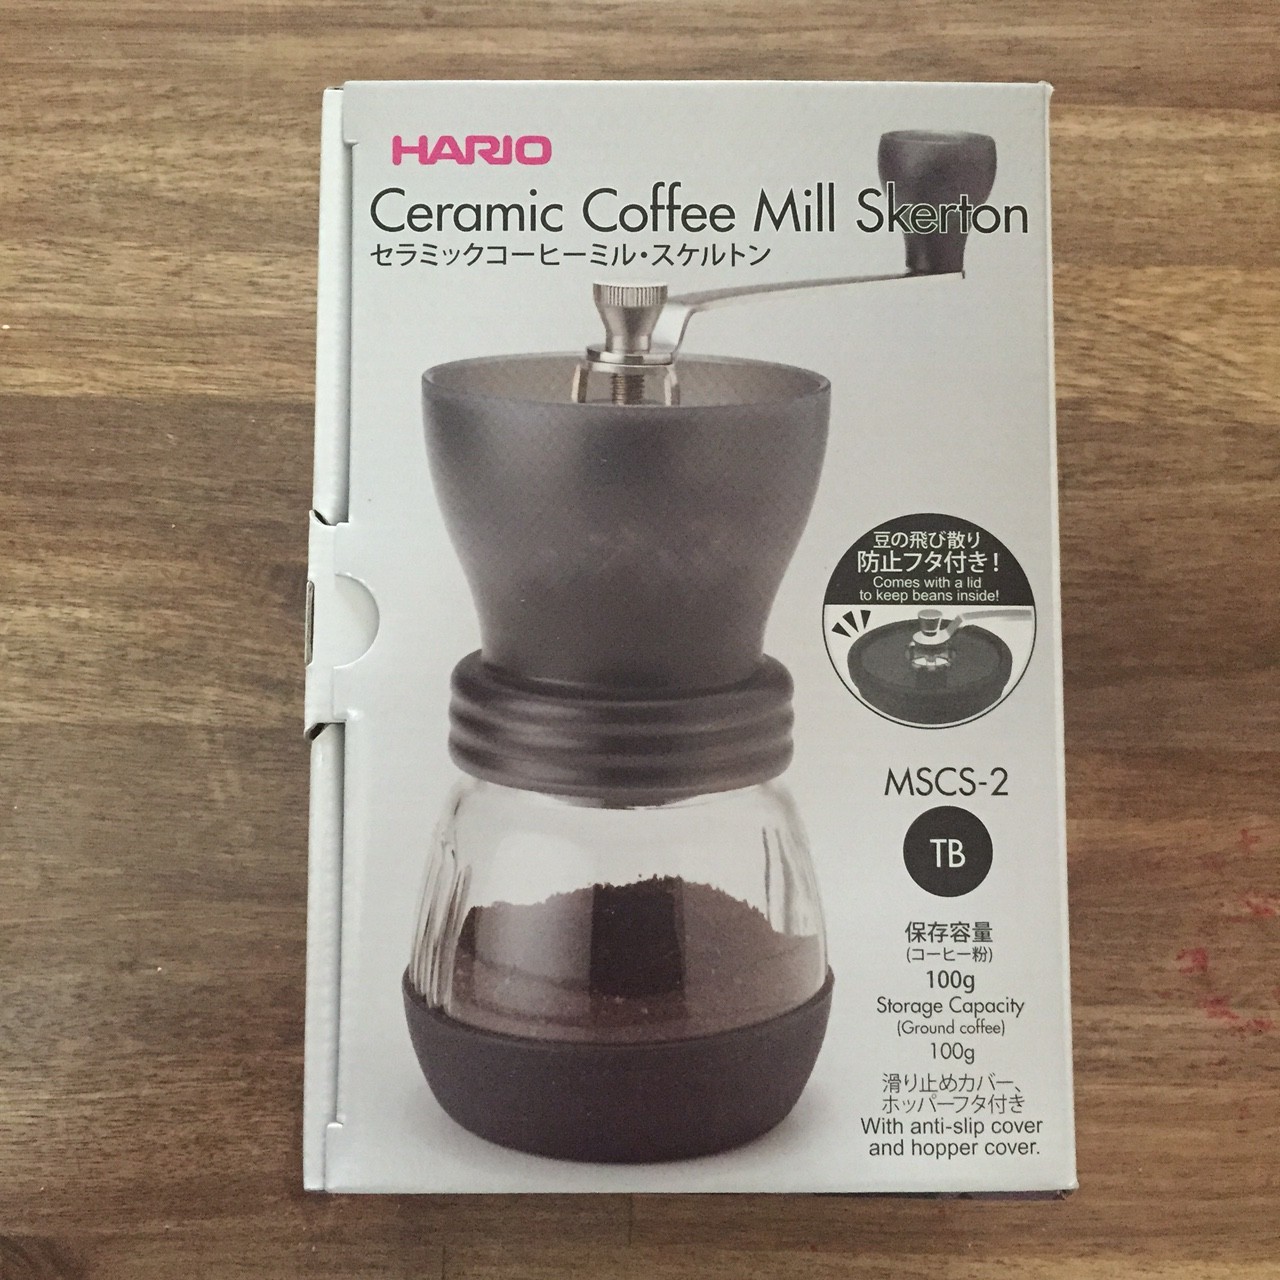 Hario Ceramic Coffee Mill Skerton Packung im Japanischen Design